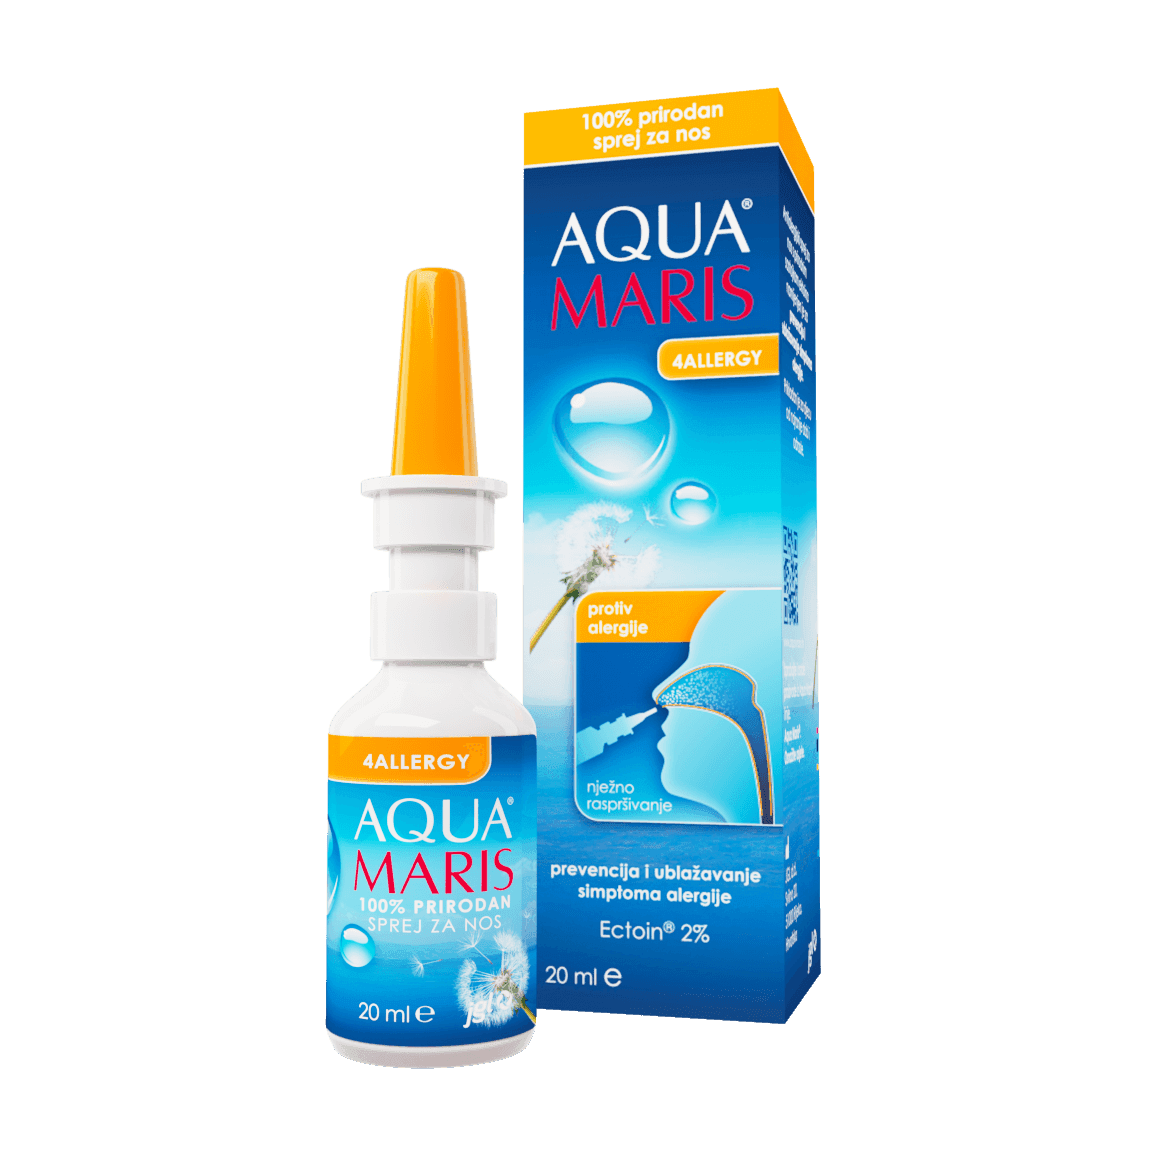 JGL Aqua maris 4 allergy спреј 20 мл